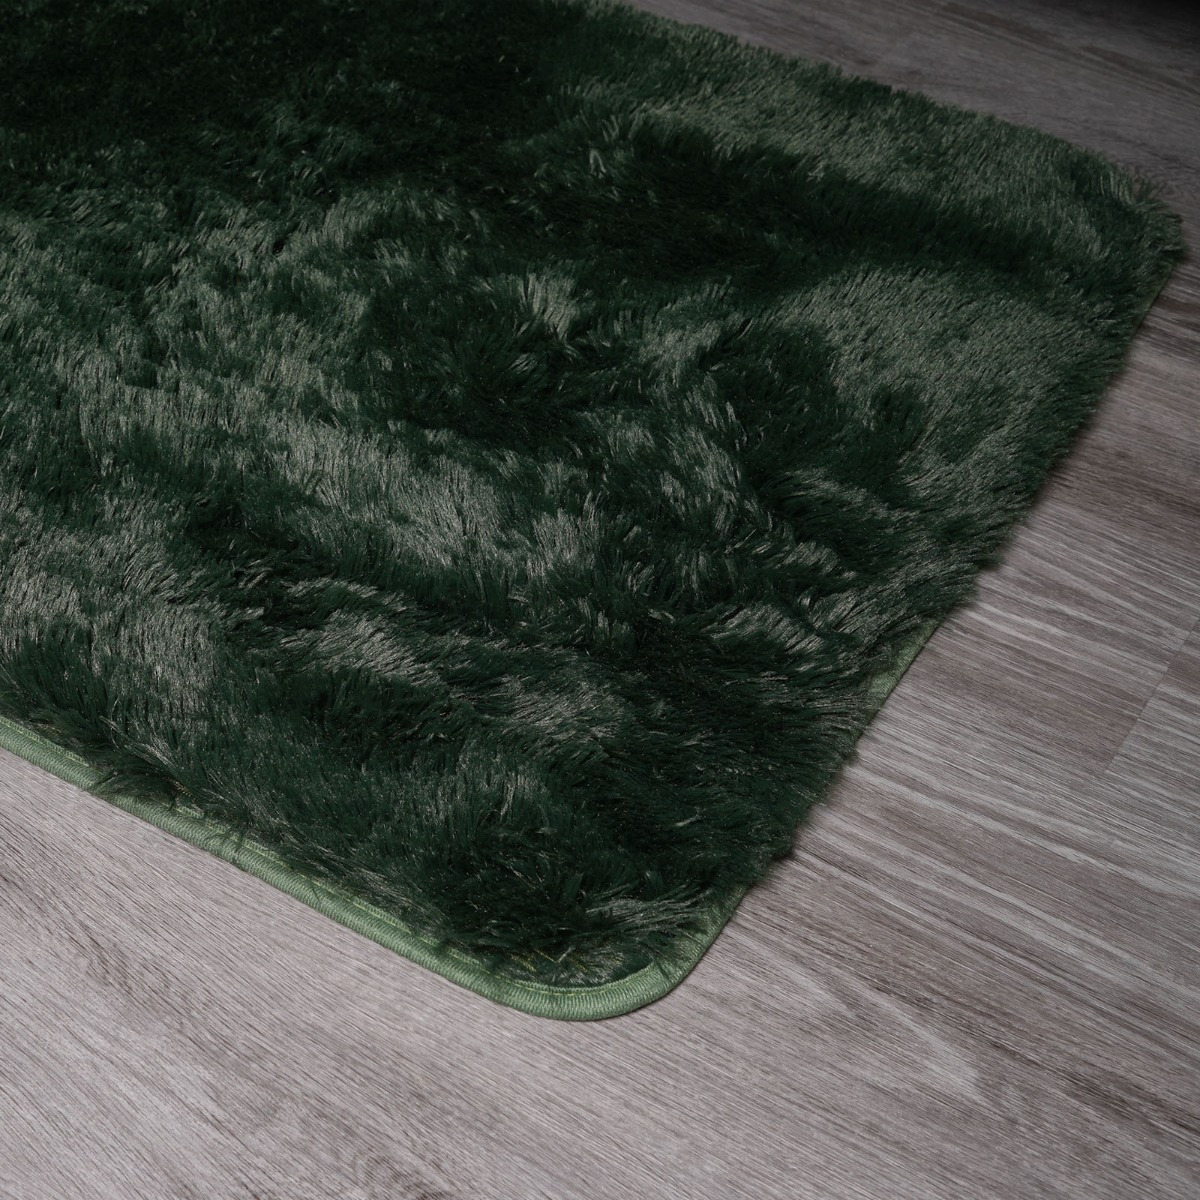 Sienna Fluffy Rug, Forest Green - 80 x 150cm>